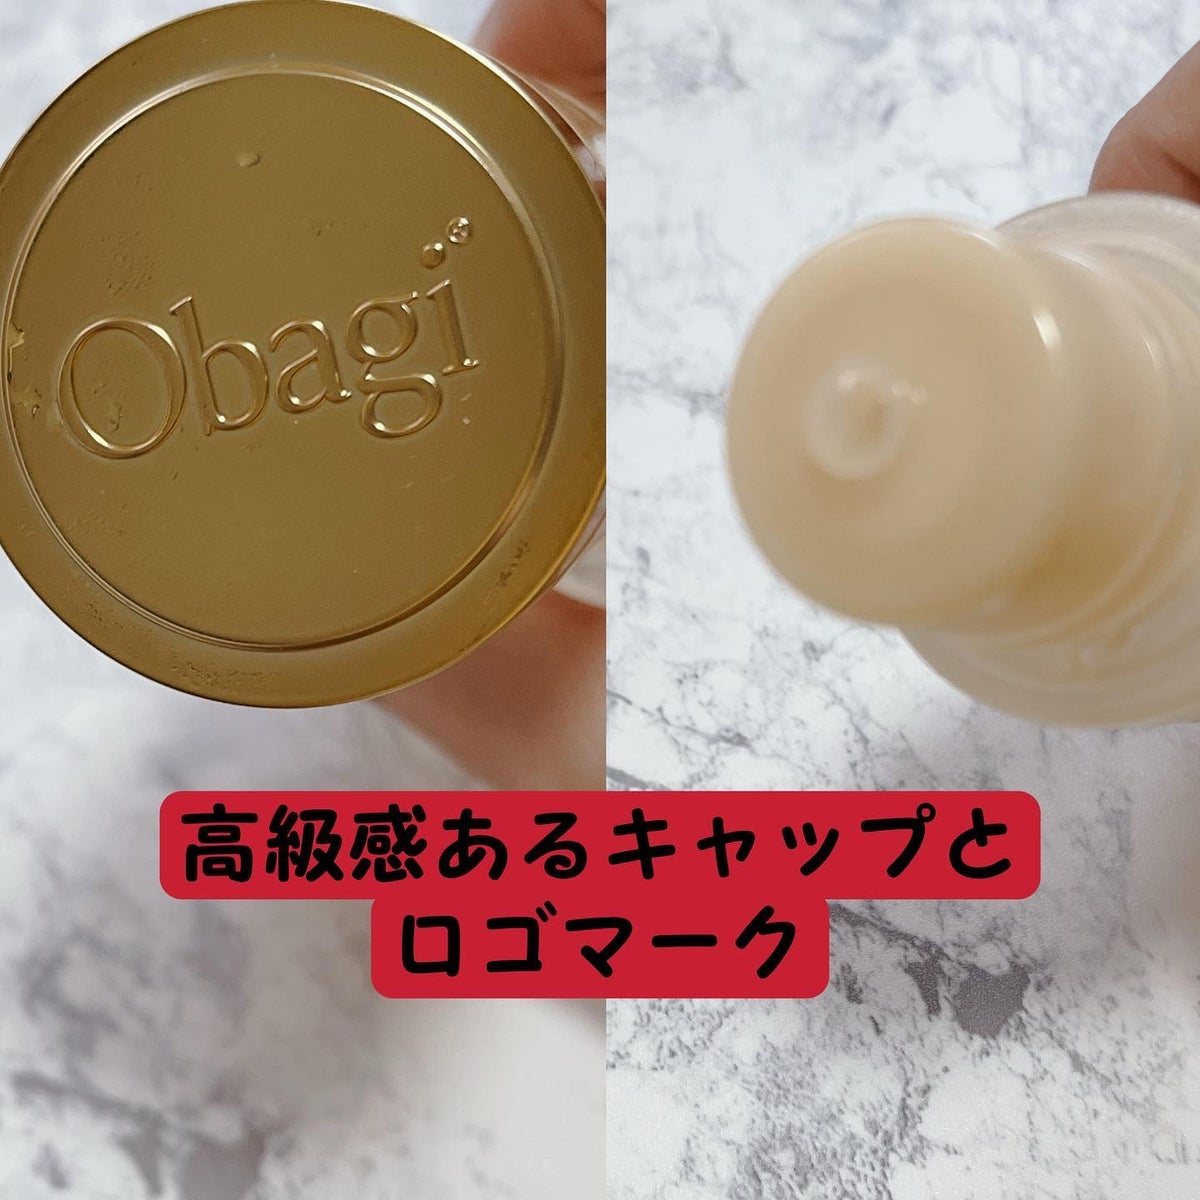 オバジX リフトローション/オバジ/化粧水を使ったクチコミ（2枚目）